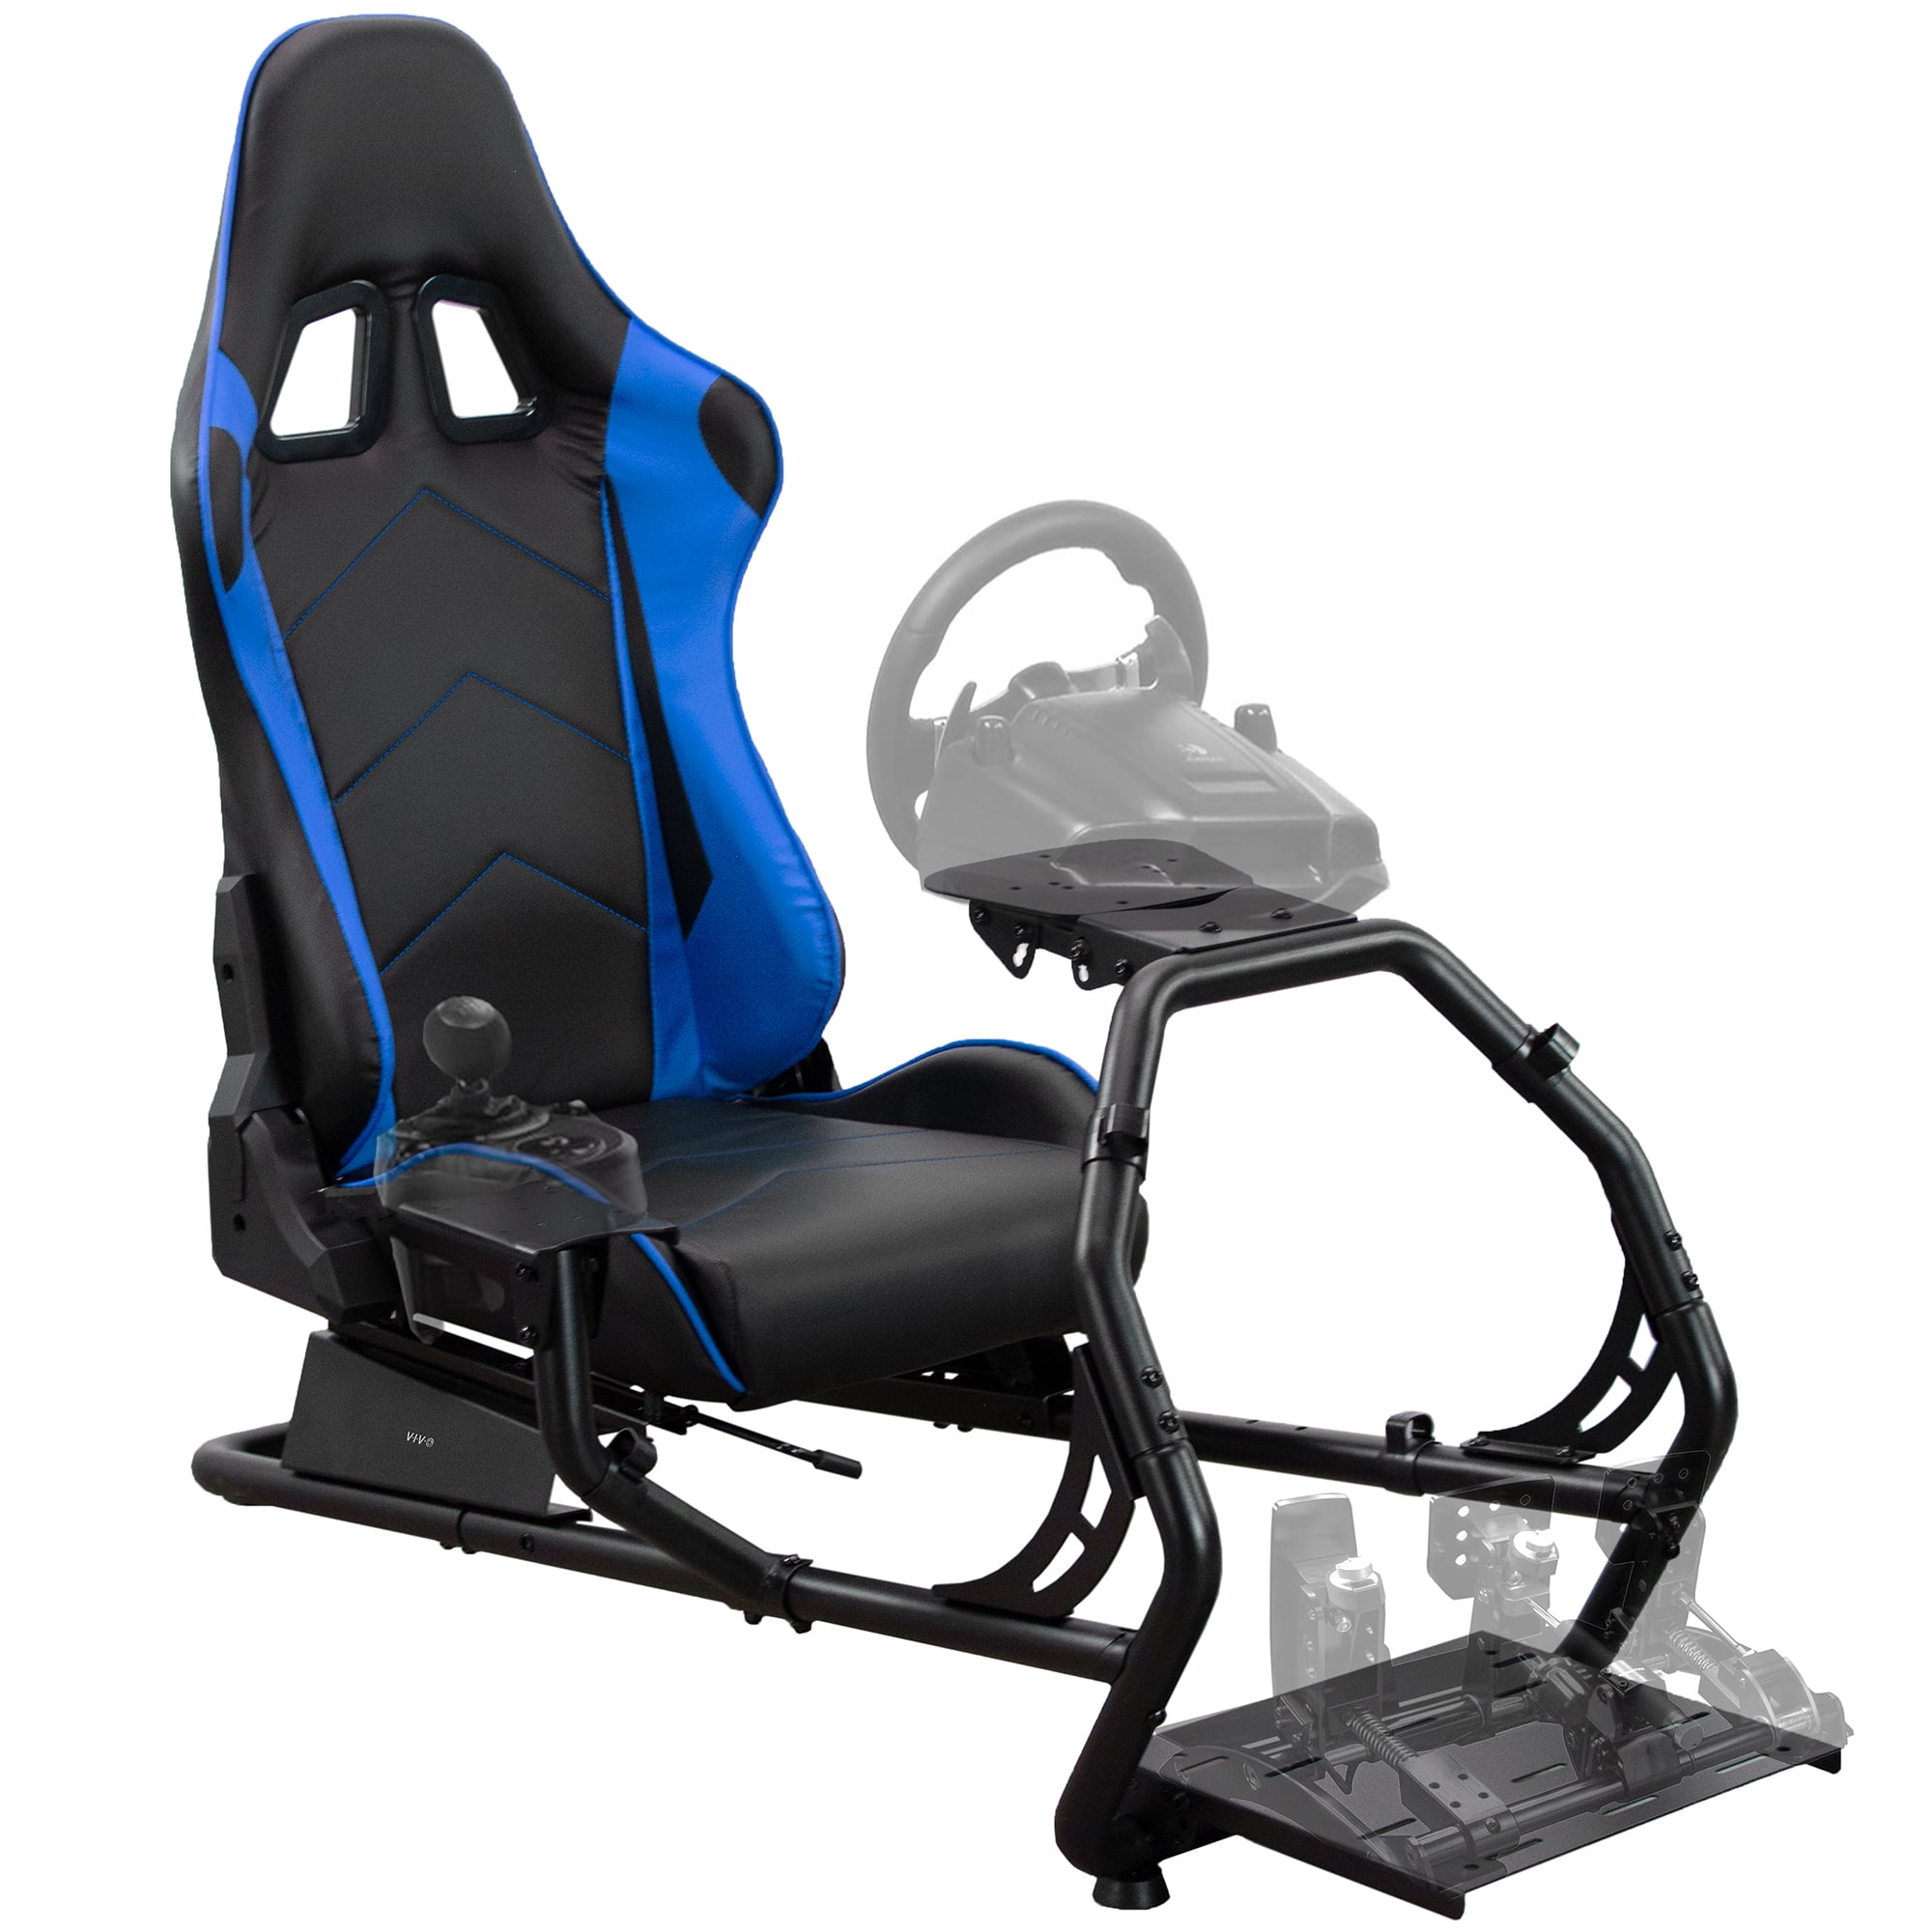 Verzadigen Intensief ontgrendelen VIVO Racing Simulator Cockpit with Wheel Stand and Reclining Seat, Gear  Mount - Walmart.com